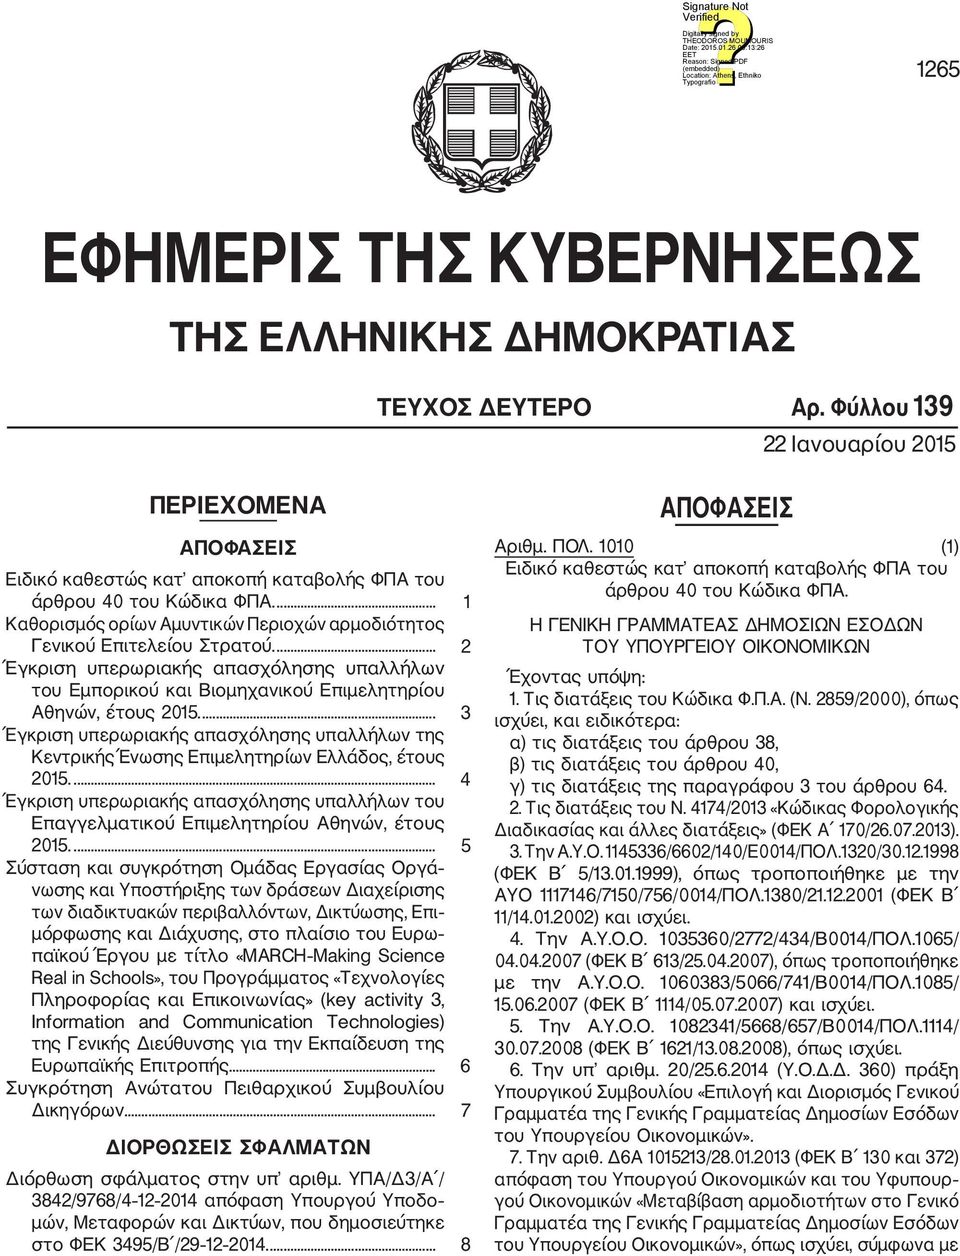 ... 3 Έγκριση υπερωριακής απασχόλησης υπαλλήλων της Κεντρικής Ένωσης Επιμελητηρίων Ελλάδος, έτους 2015.... 4 Έγκριση υπερωριακής απασχόλησης υπαλλήλων του Επαγγελματικού Επιμελητηρίου Αθηνών, έτους 2015.